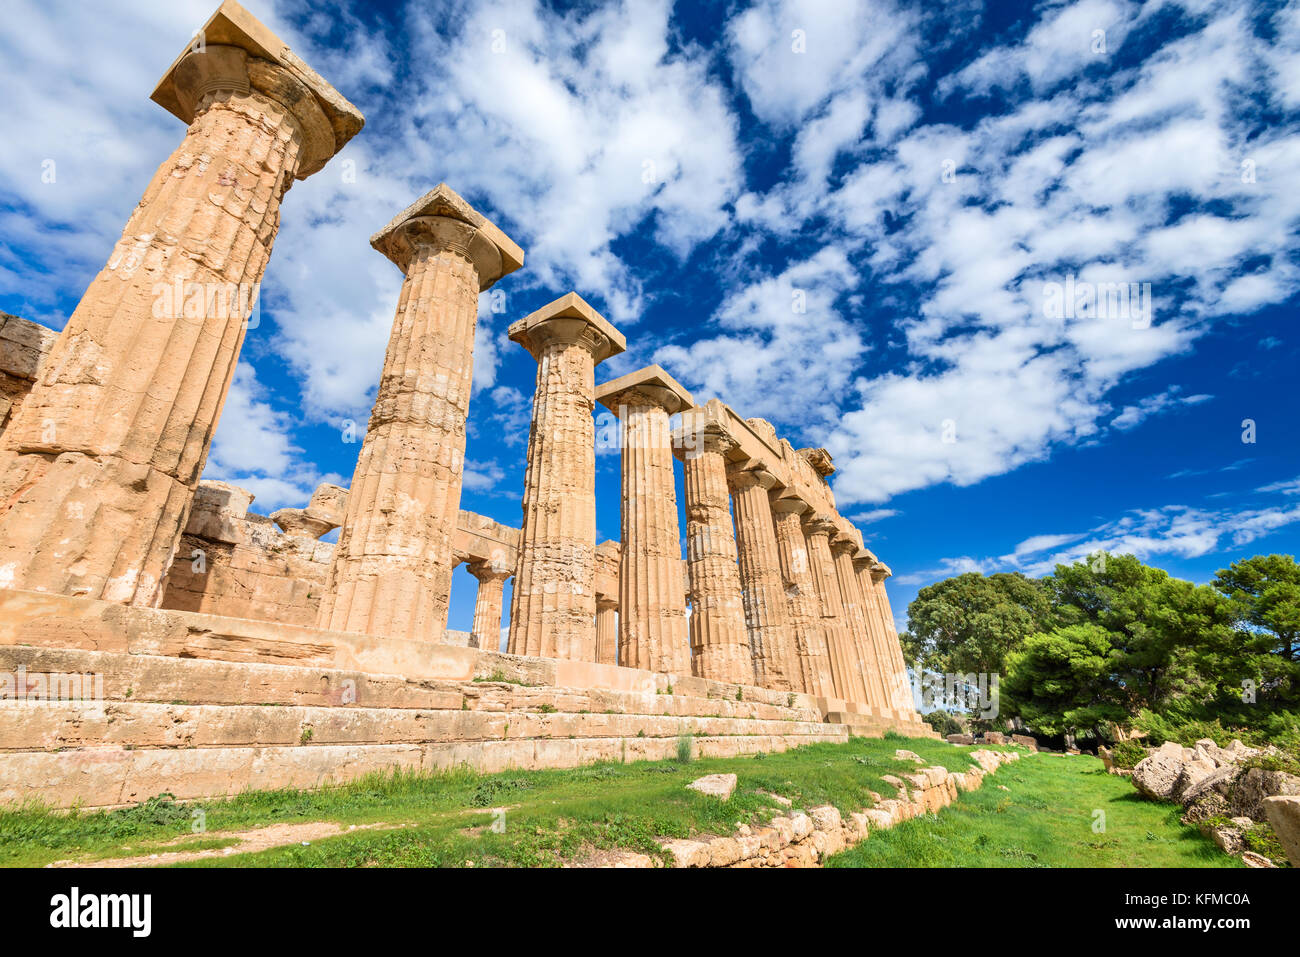 Selinunte era una antica città greca sulla costa sud-occidentale della Sicilia in Italia. Tempio di Hera rovine di stile dorico architettura. Foto Stock